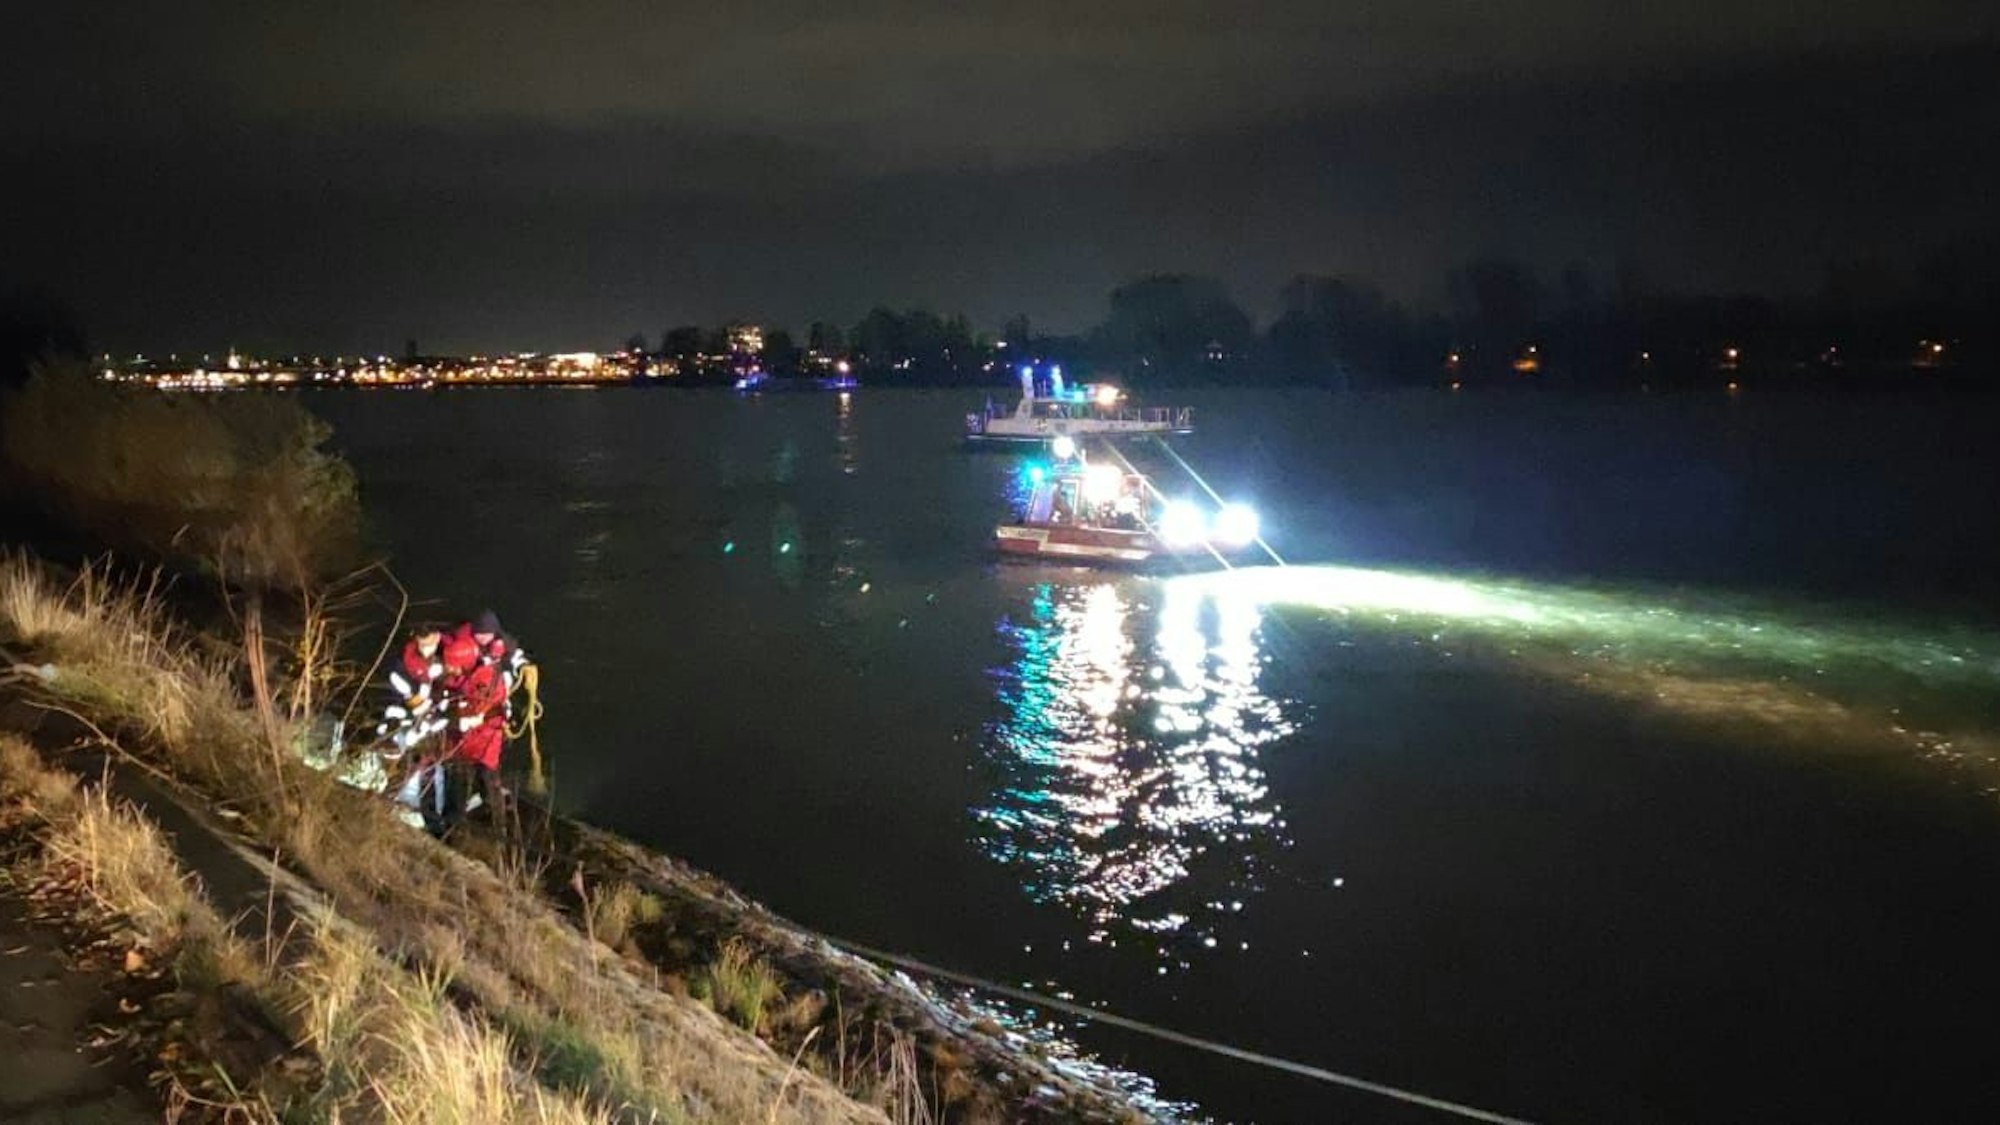 Einsatzkräfte stehen am Rheinufer, auf dem Wasser beleuchtet ein Boot die Wasseroberfläche.